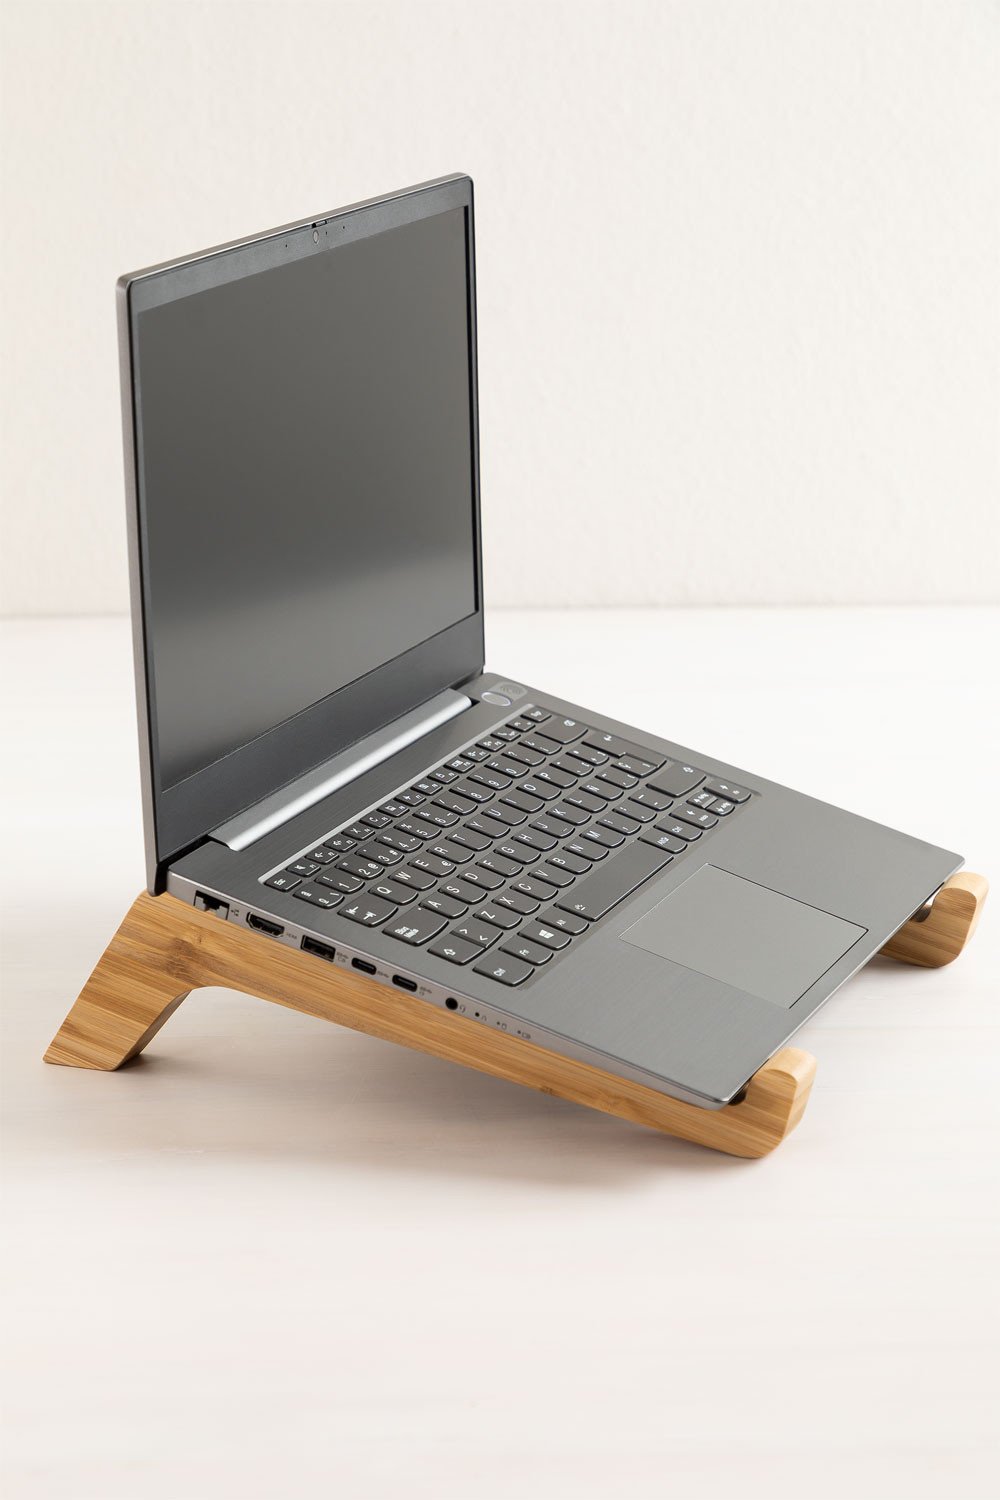 Support pour ordinateur portable Logi en bambou